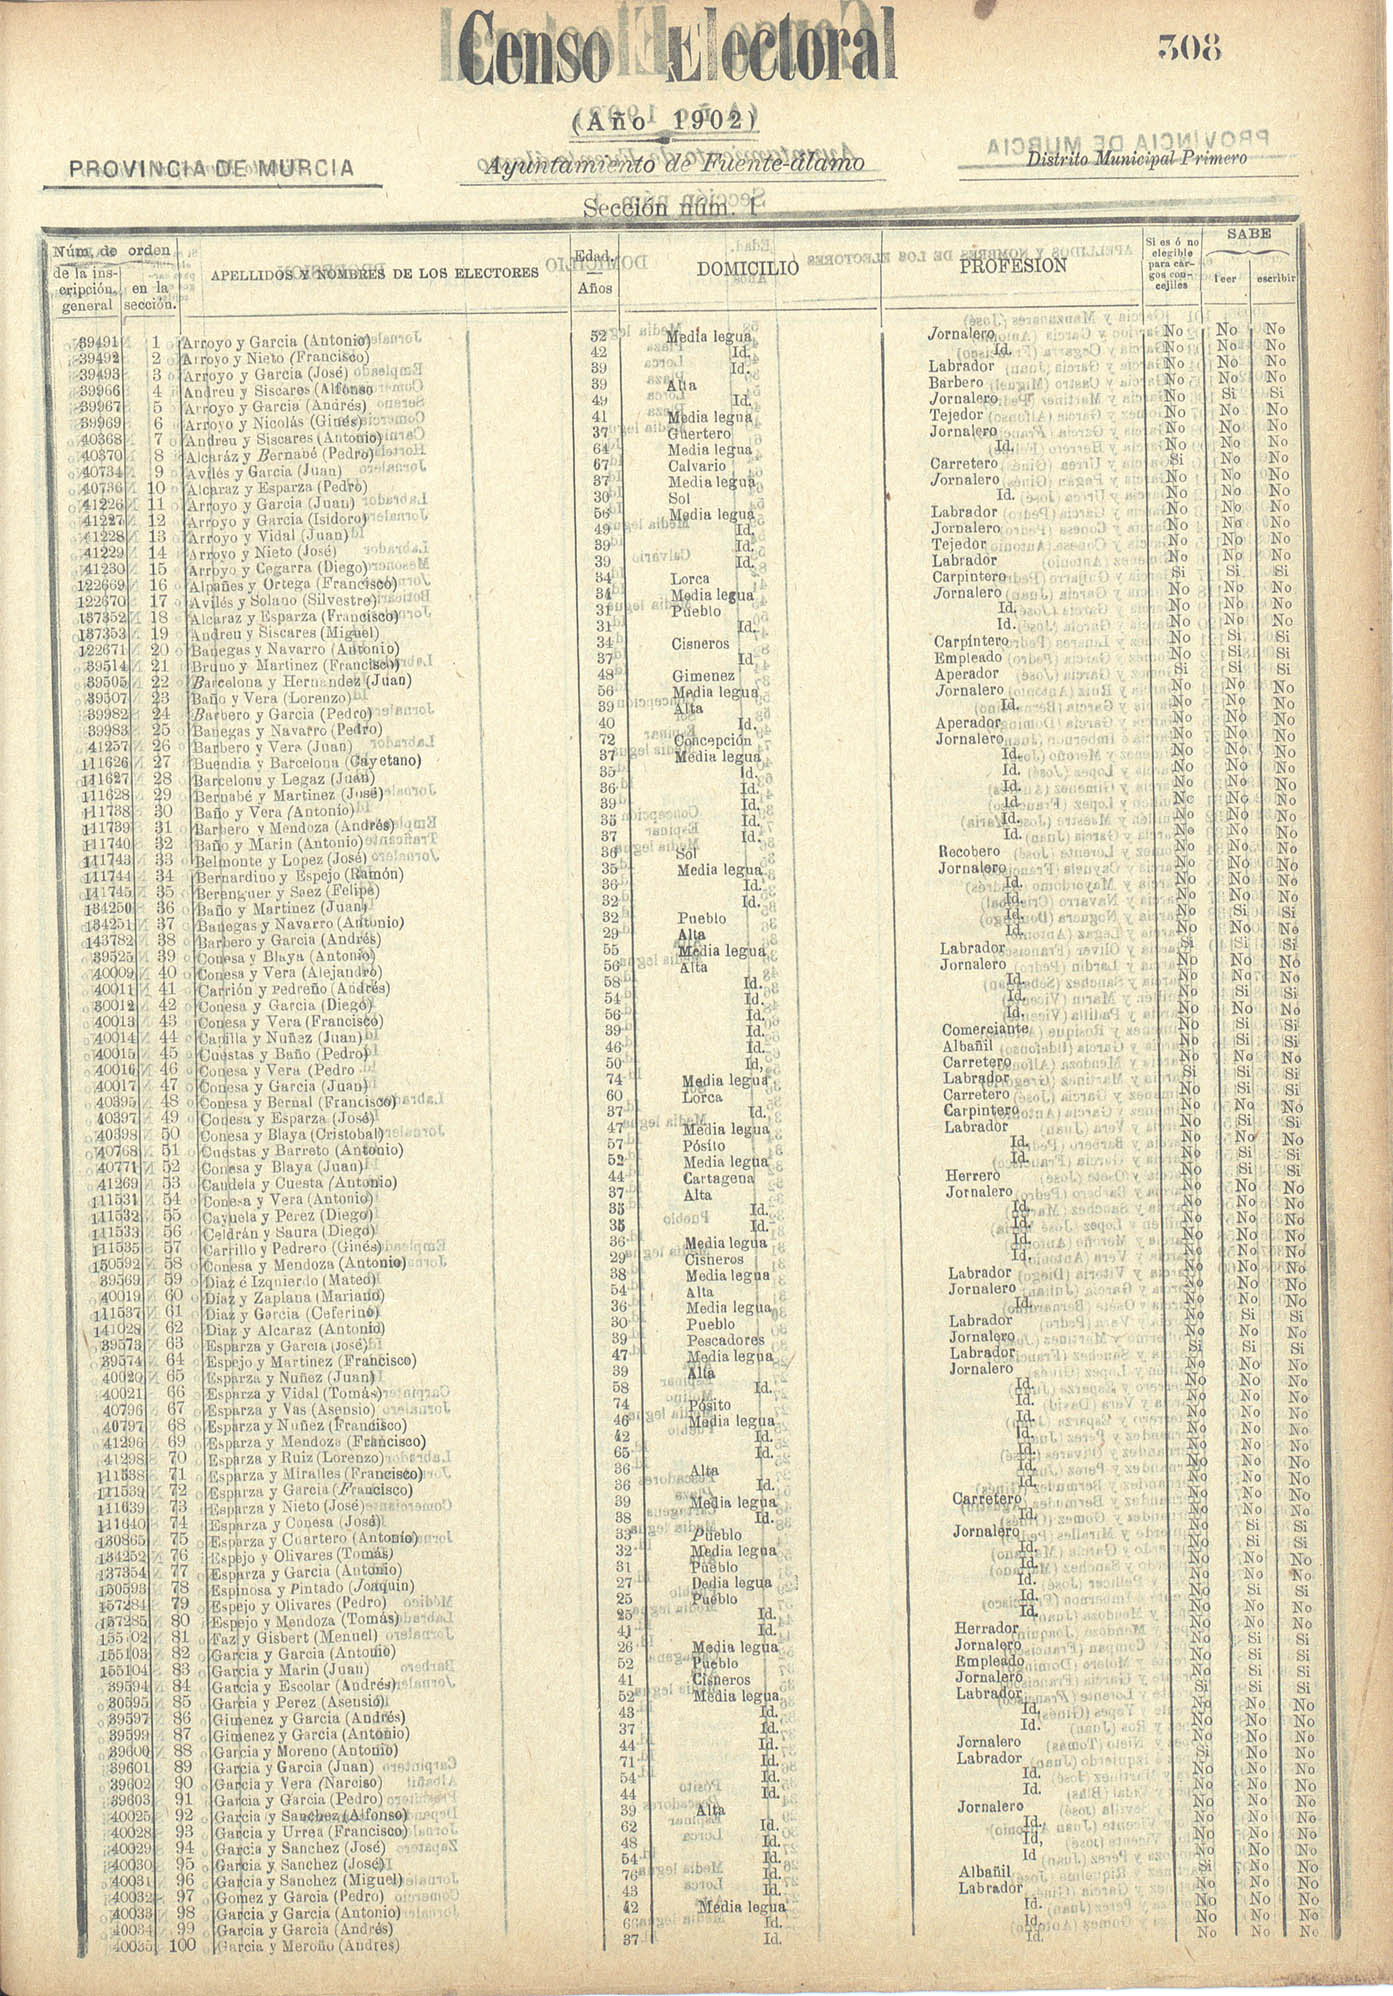 Censo electoral provincial de 1902: Fuente Álamo.